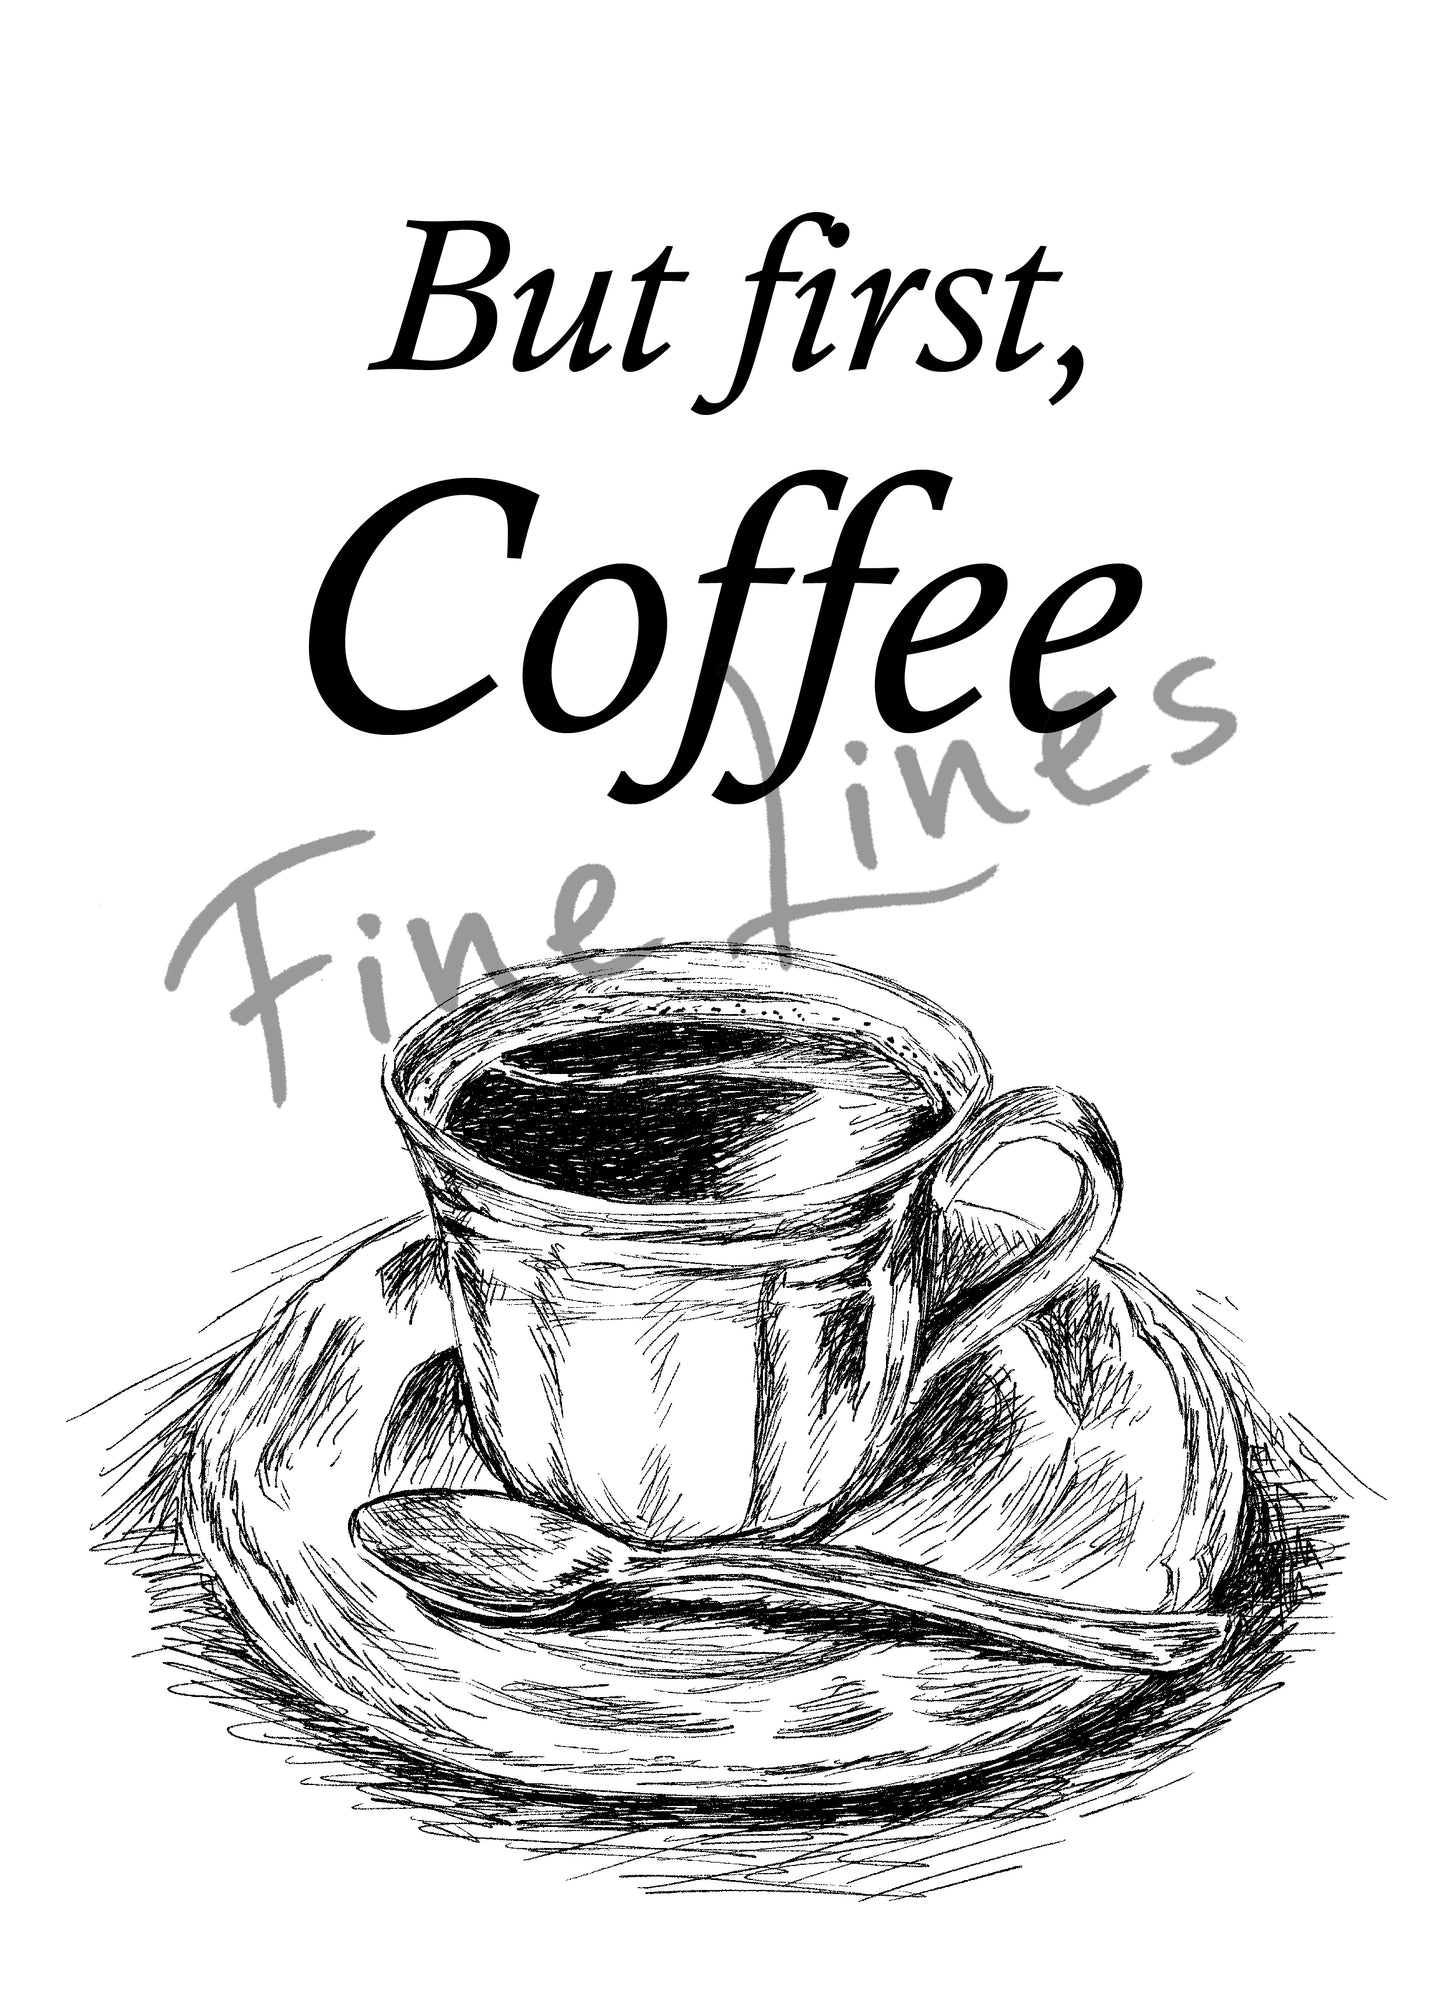 תמונת השראה להדפסה כוס קפה But first coffee - rachelsfinelines